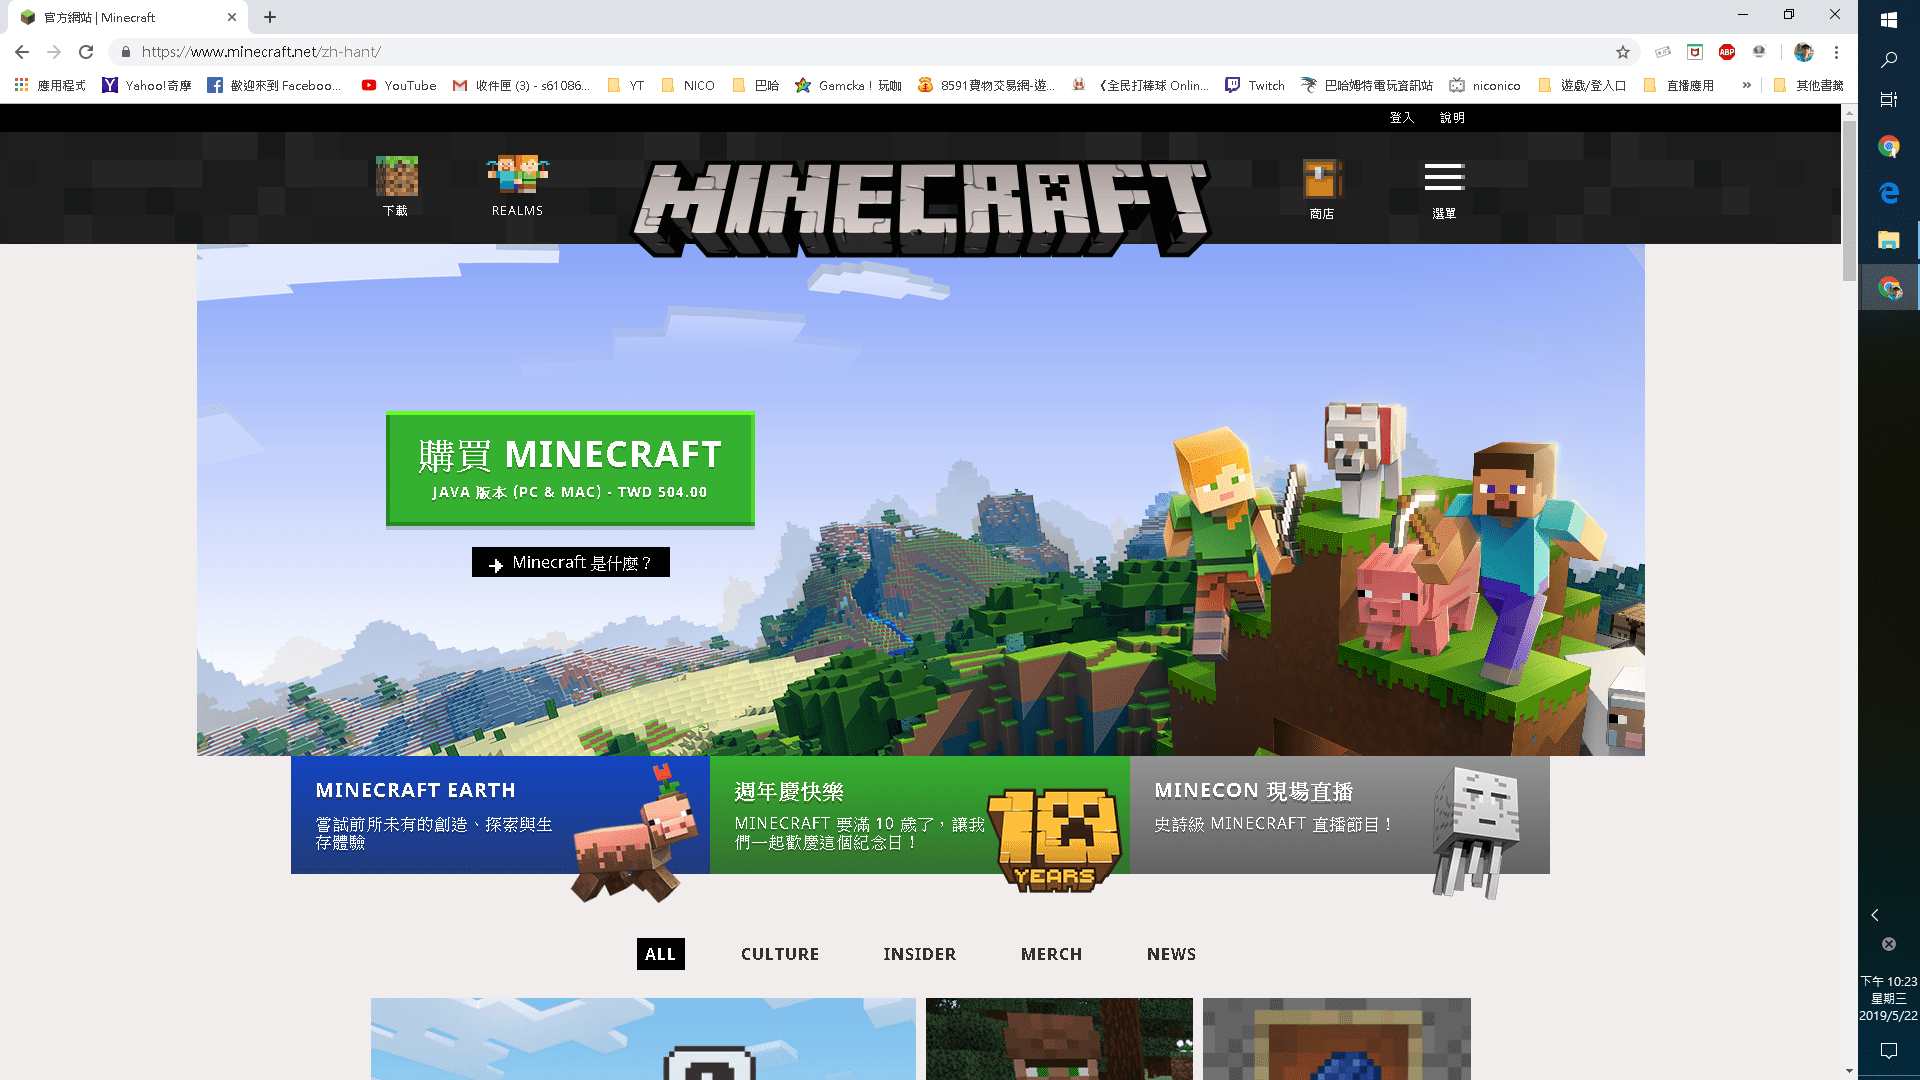 慶祝Minecraft 10周年推出初代免費版 遊戲特價等優惠.png